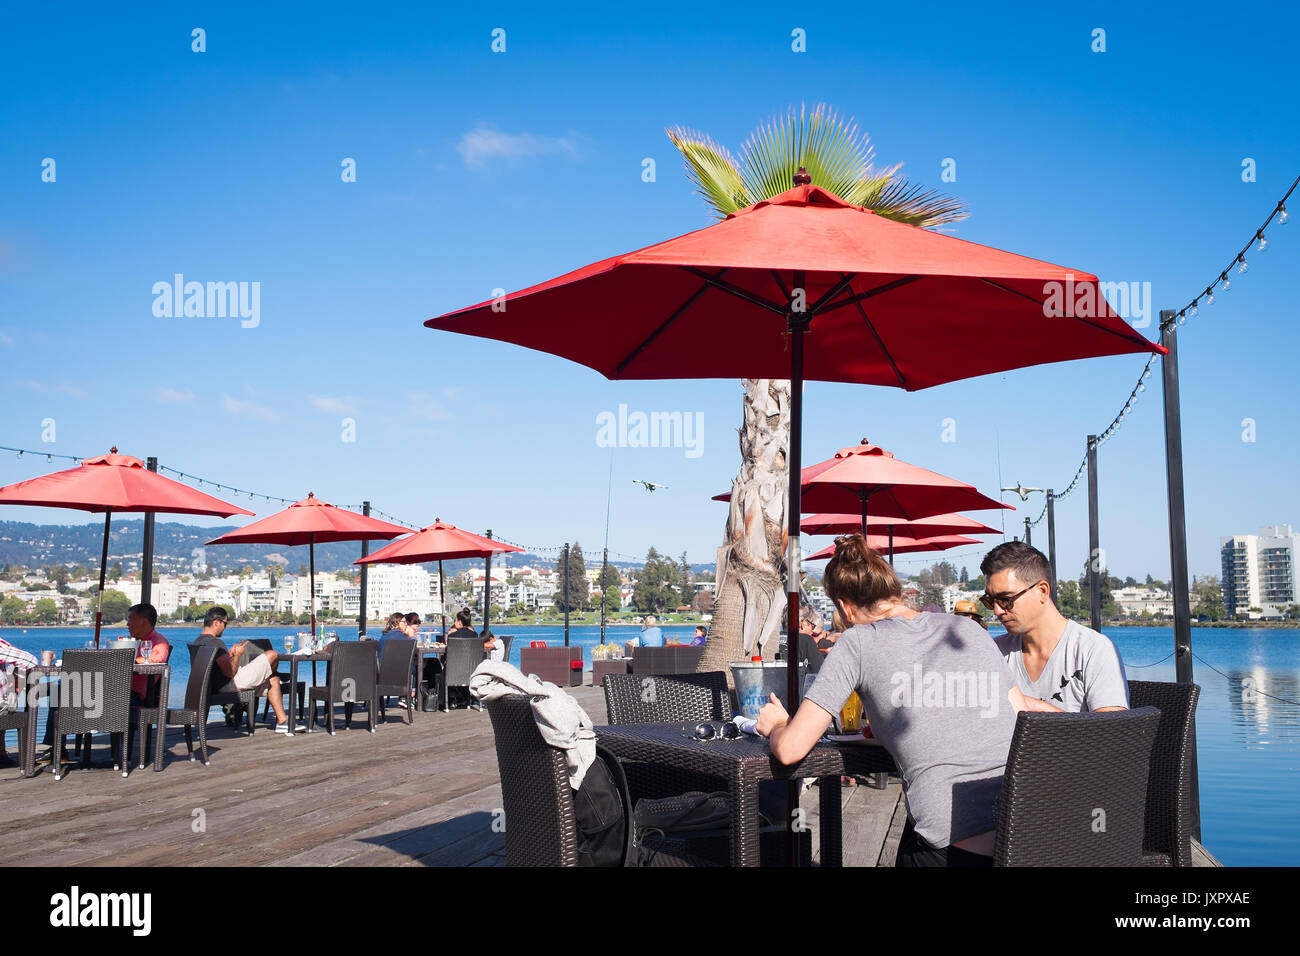 OAKLAND, CA - Agosto 25, 2016: Downtown Lago Merritt waterfront restaurant con posti a sedere esterni su una banchina in legno. Diners godendo il brunch del fine settimana. Foto Stock